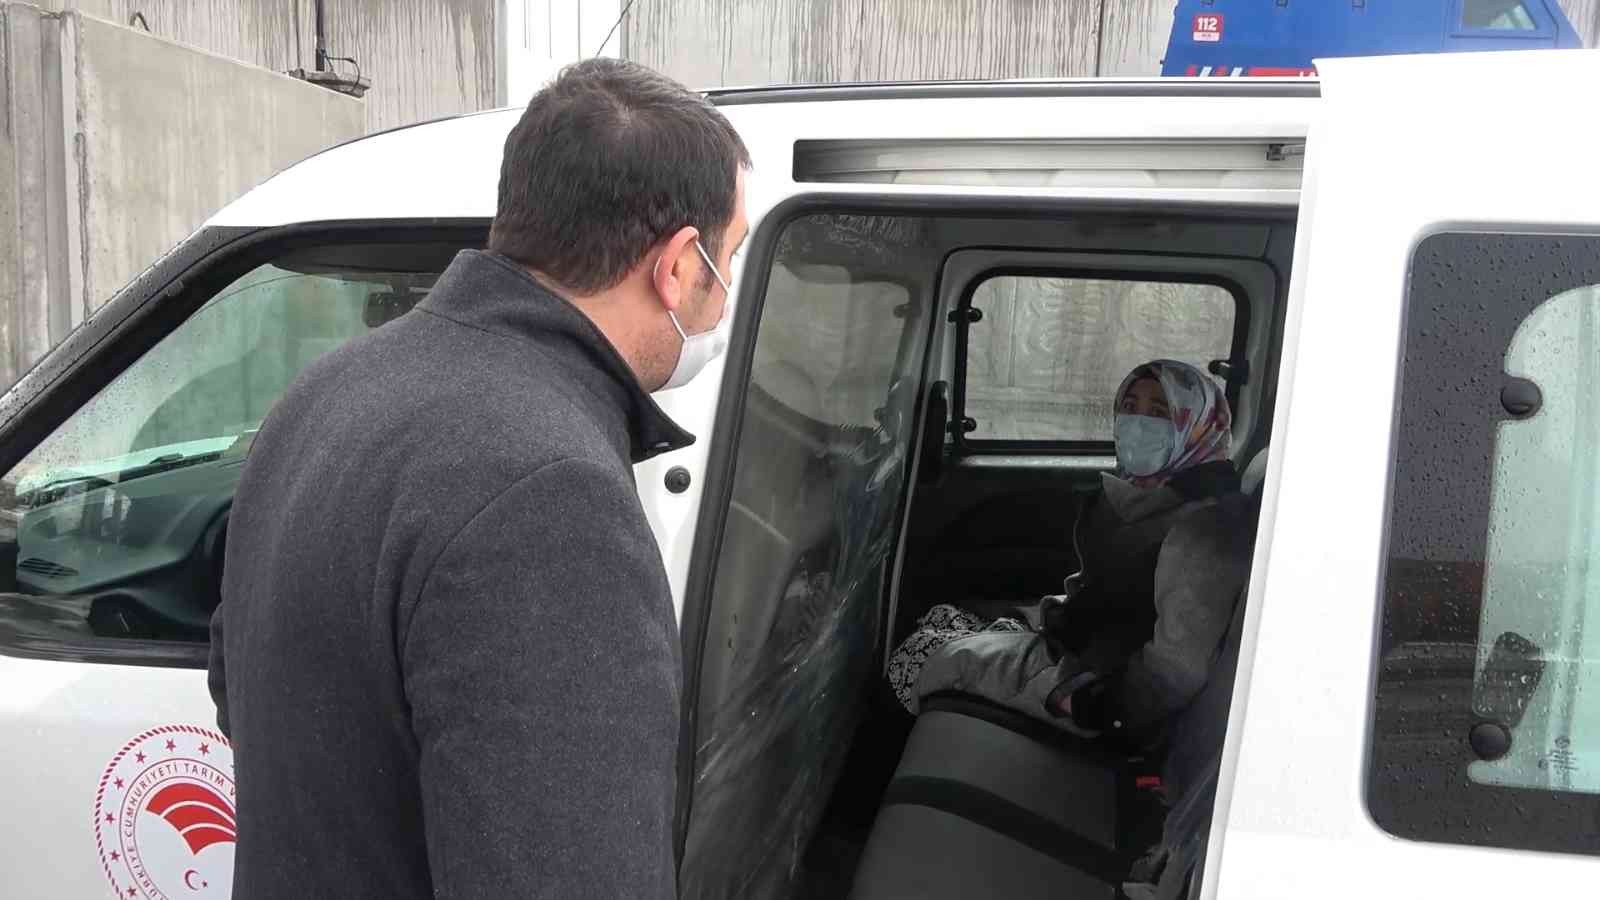 Cenaze törenine katılan korona virüslü kadın otobüste yakalandı: Karantinaya alındı #kirikkale